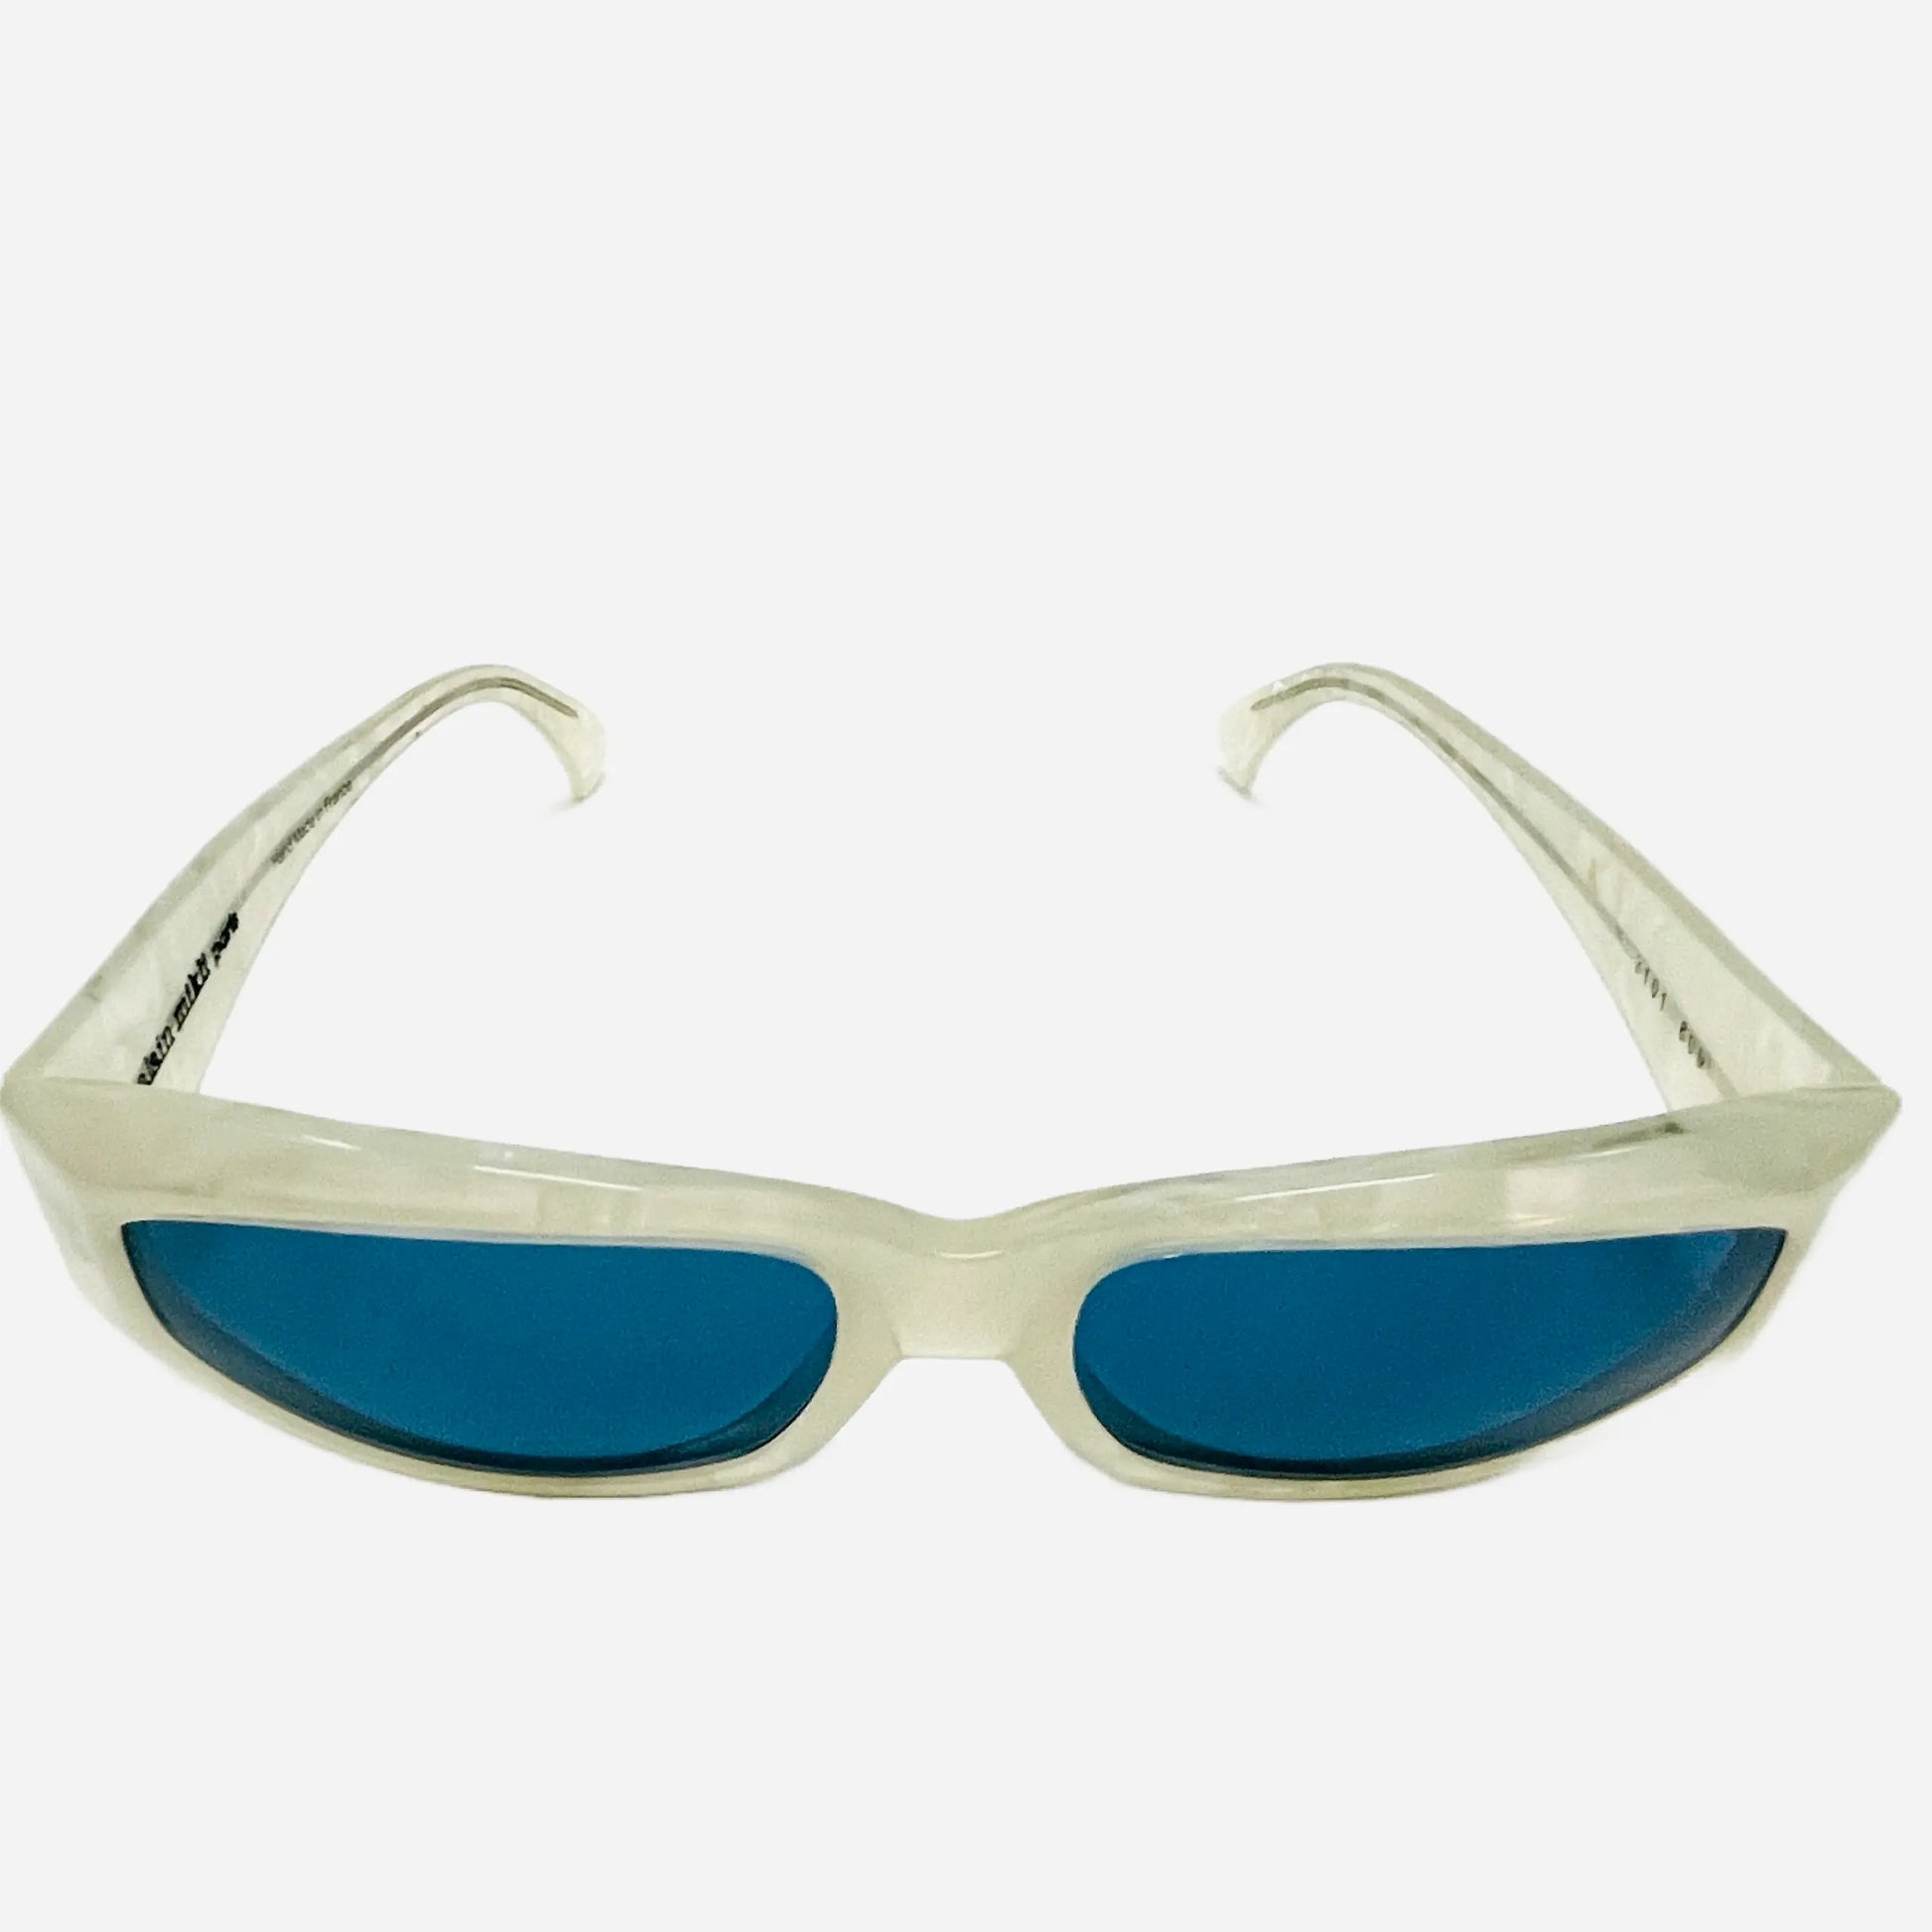 ALAIN-MIKLI-Sonnenbrille-Sunglasses-3101-809-Ansolet-Front